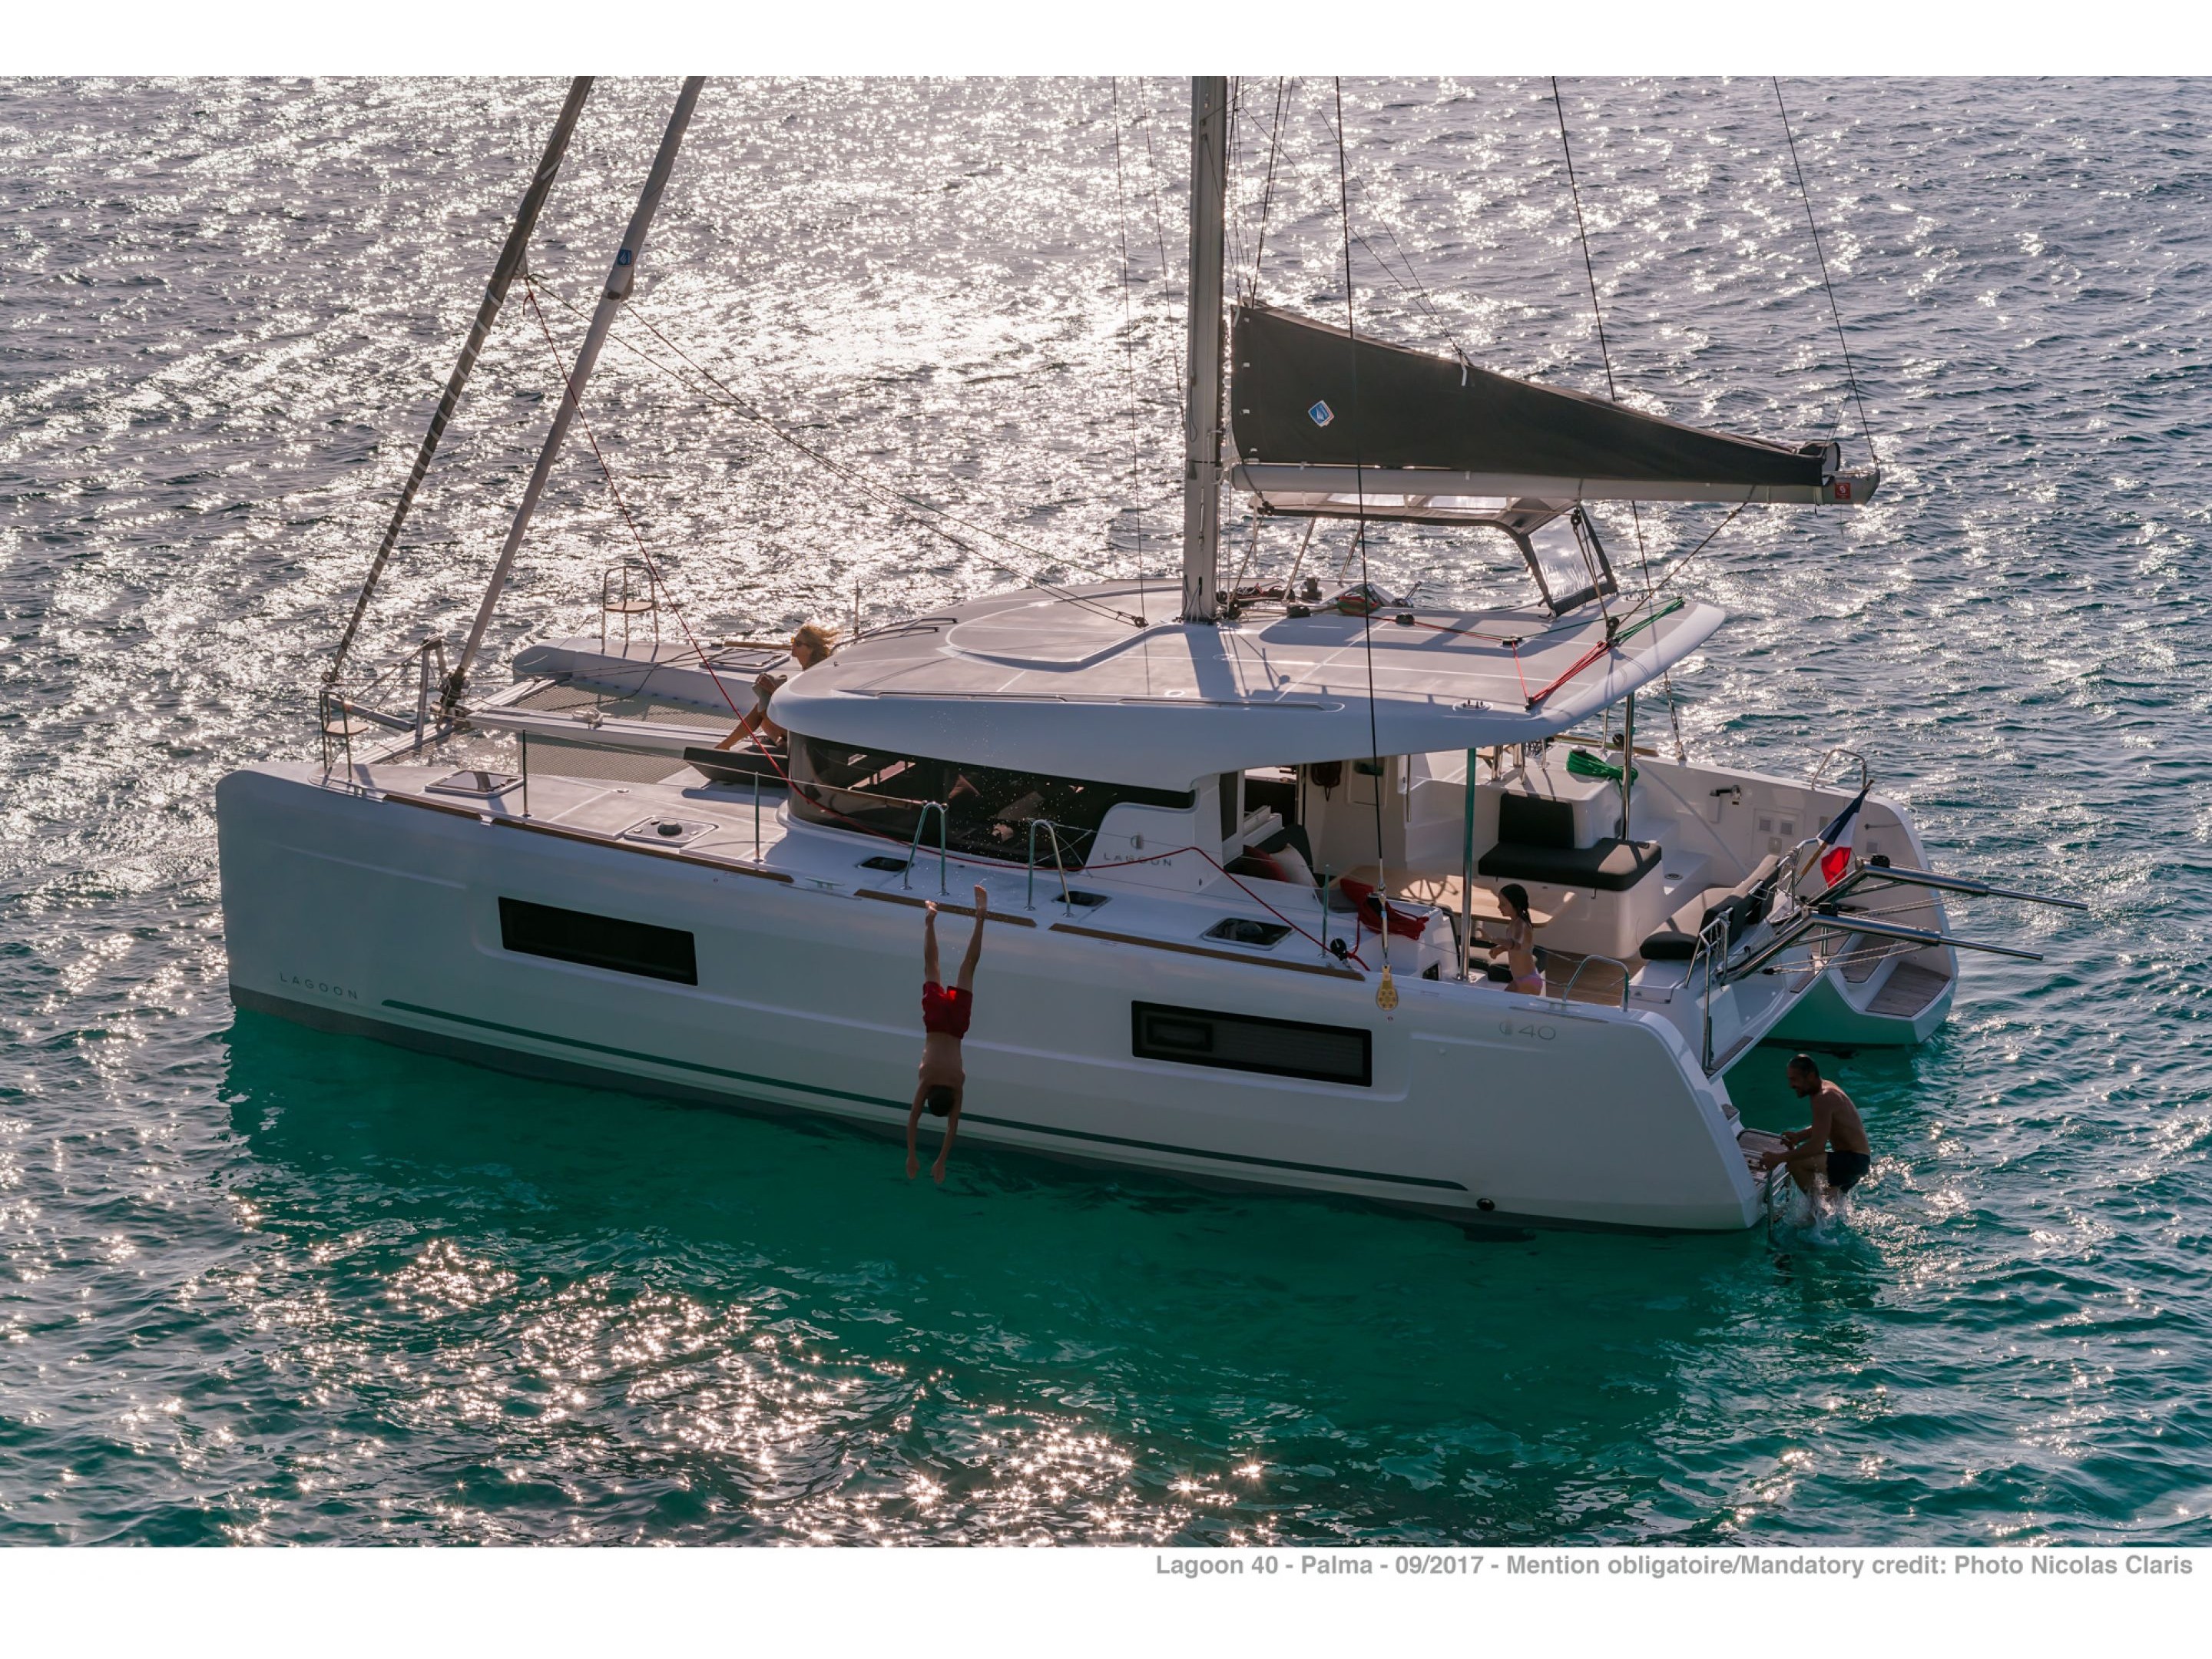 Lagoon 40 - Yacht Charter Capo d'Orlando & Boat hire in Italy Sicily Aeolian Islands Capo d'Orlando Capo d'Orlando Marina 3